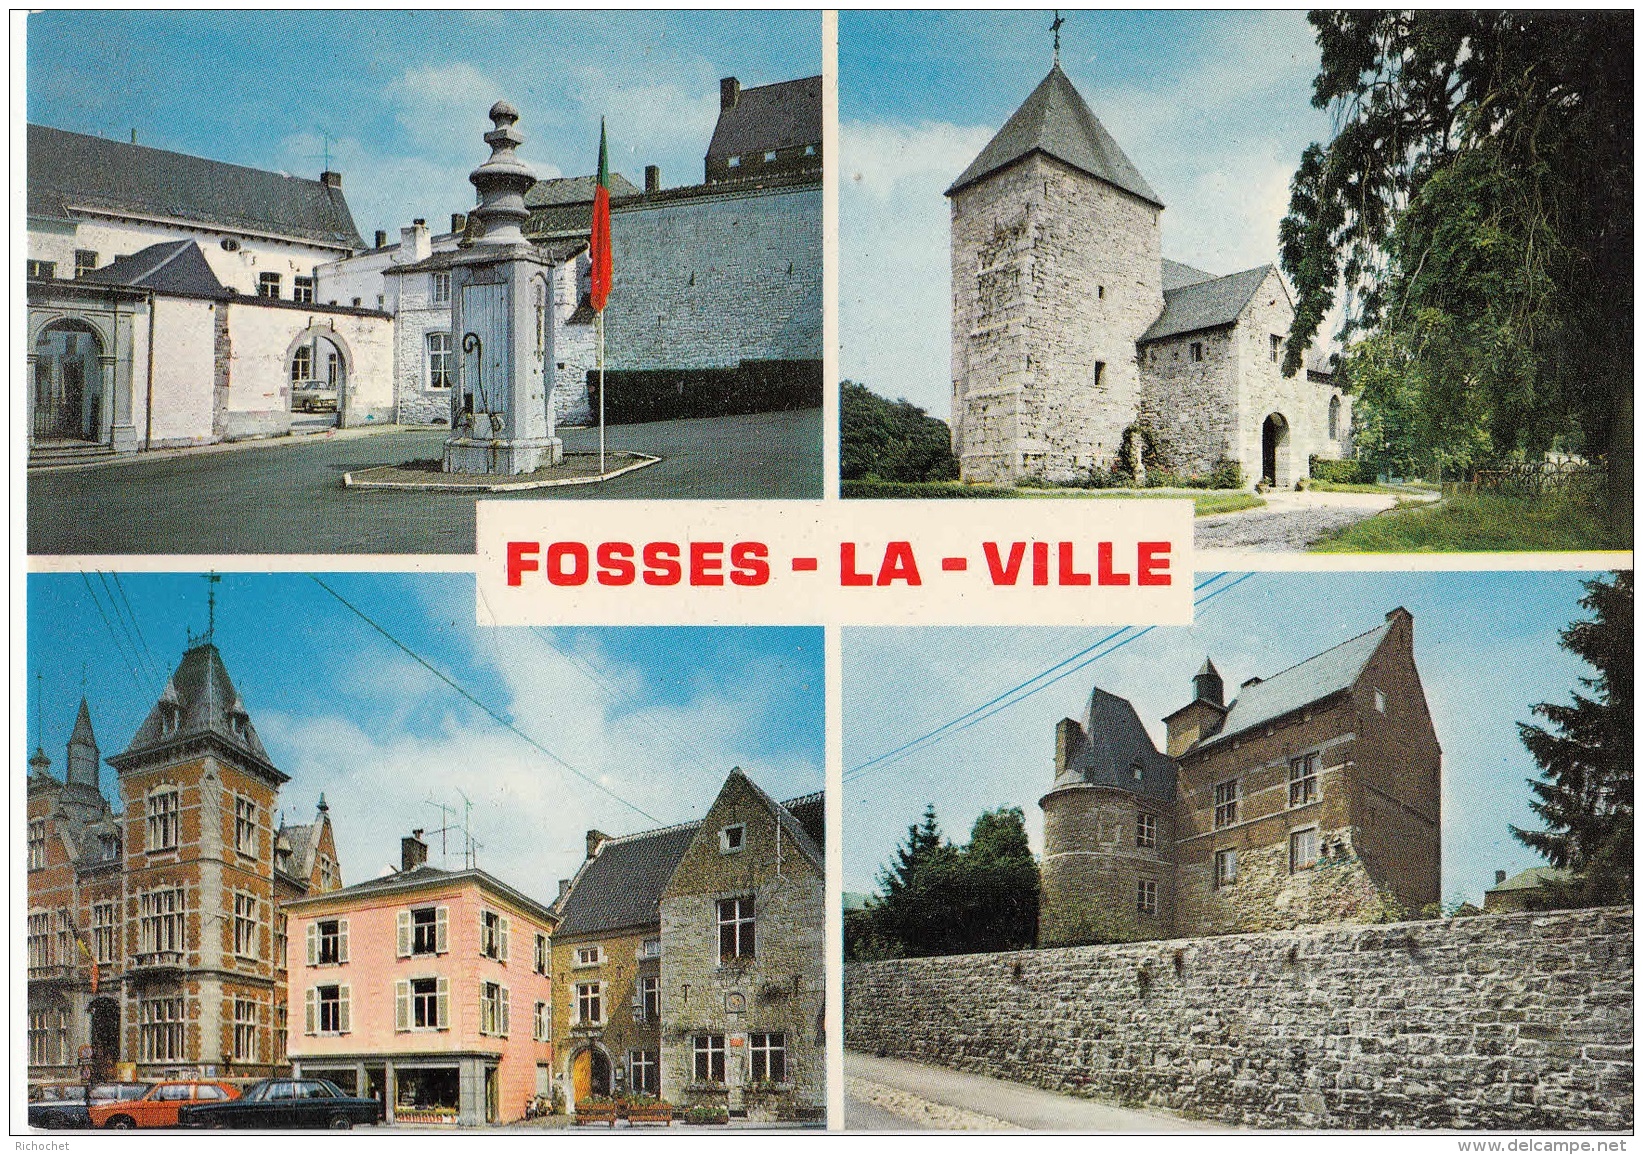 Fosses-la-Ville - Fosses-la-Ville